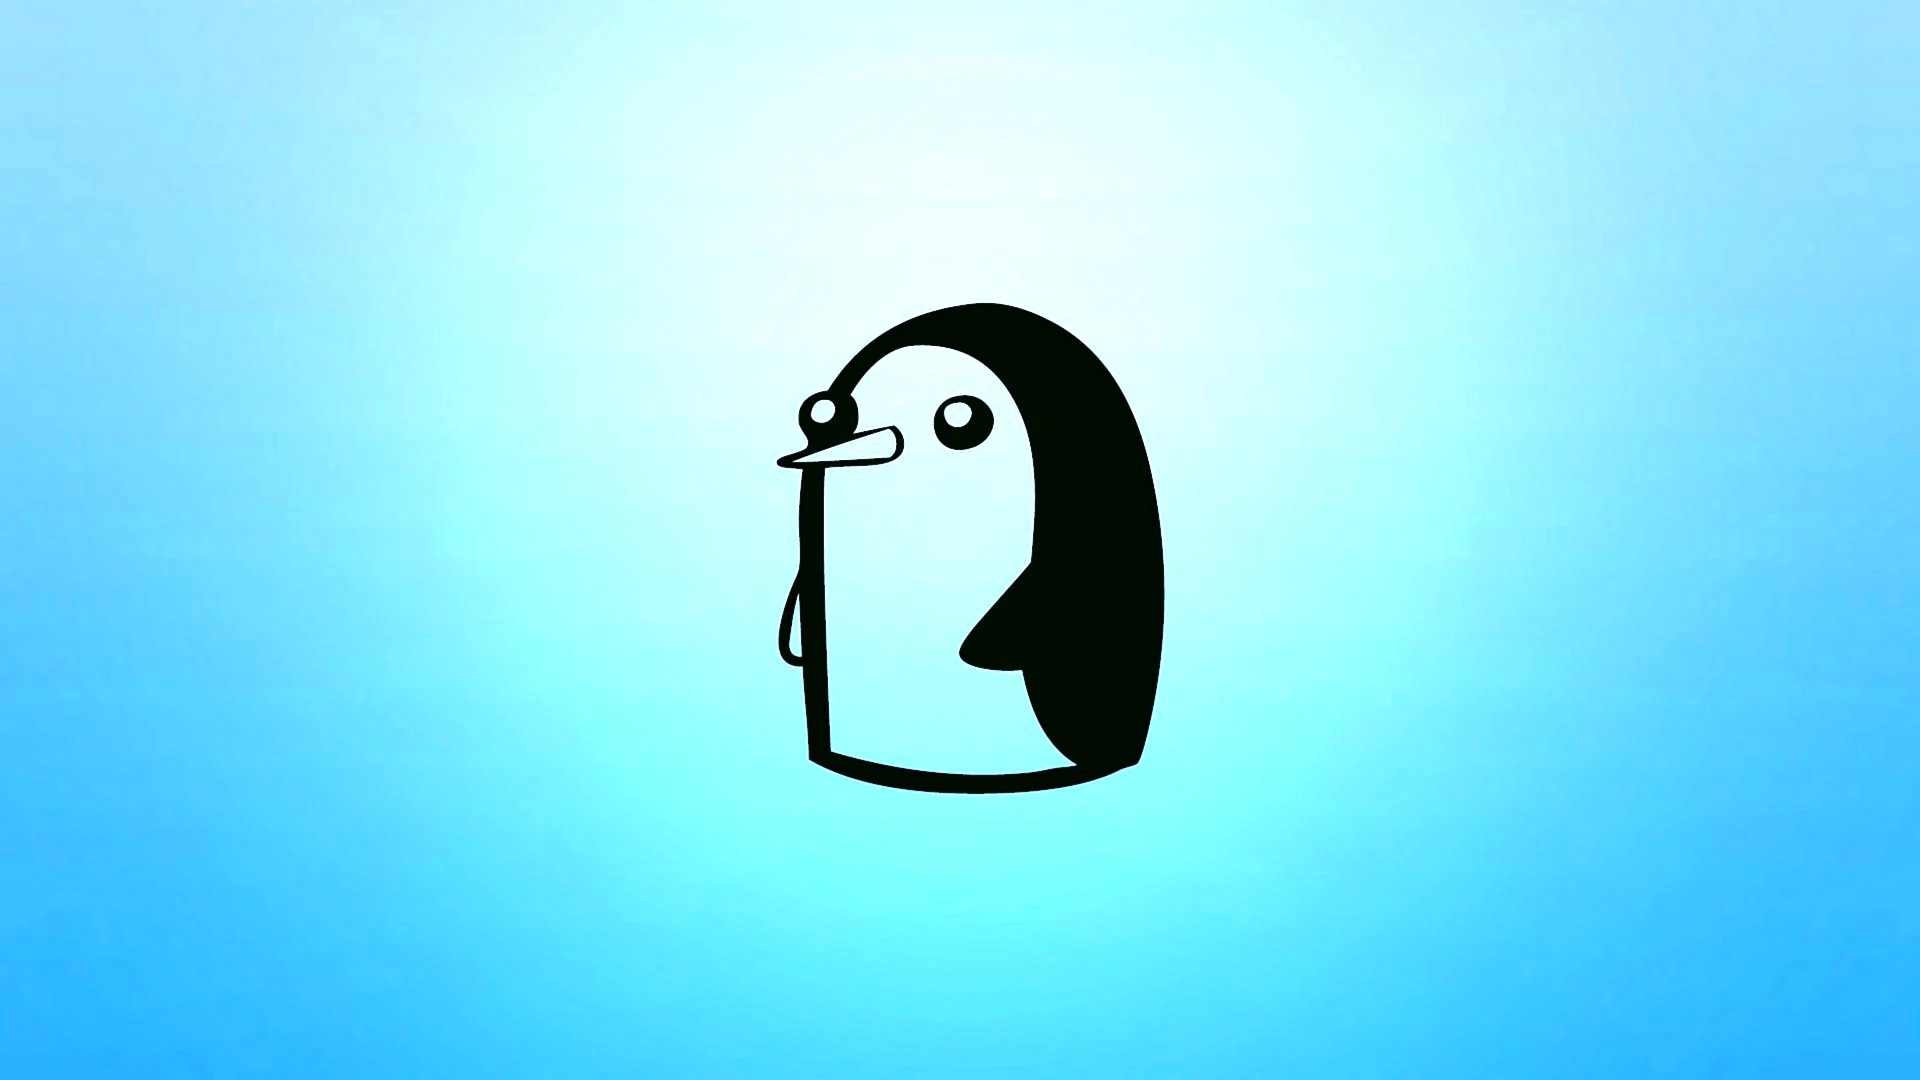 Пингвин адвенчер тайм